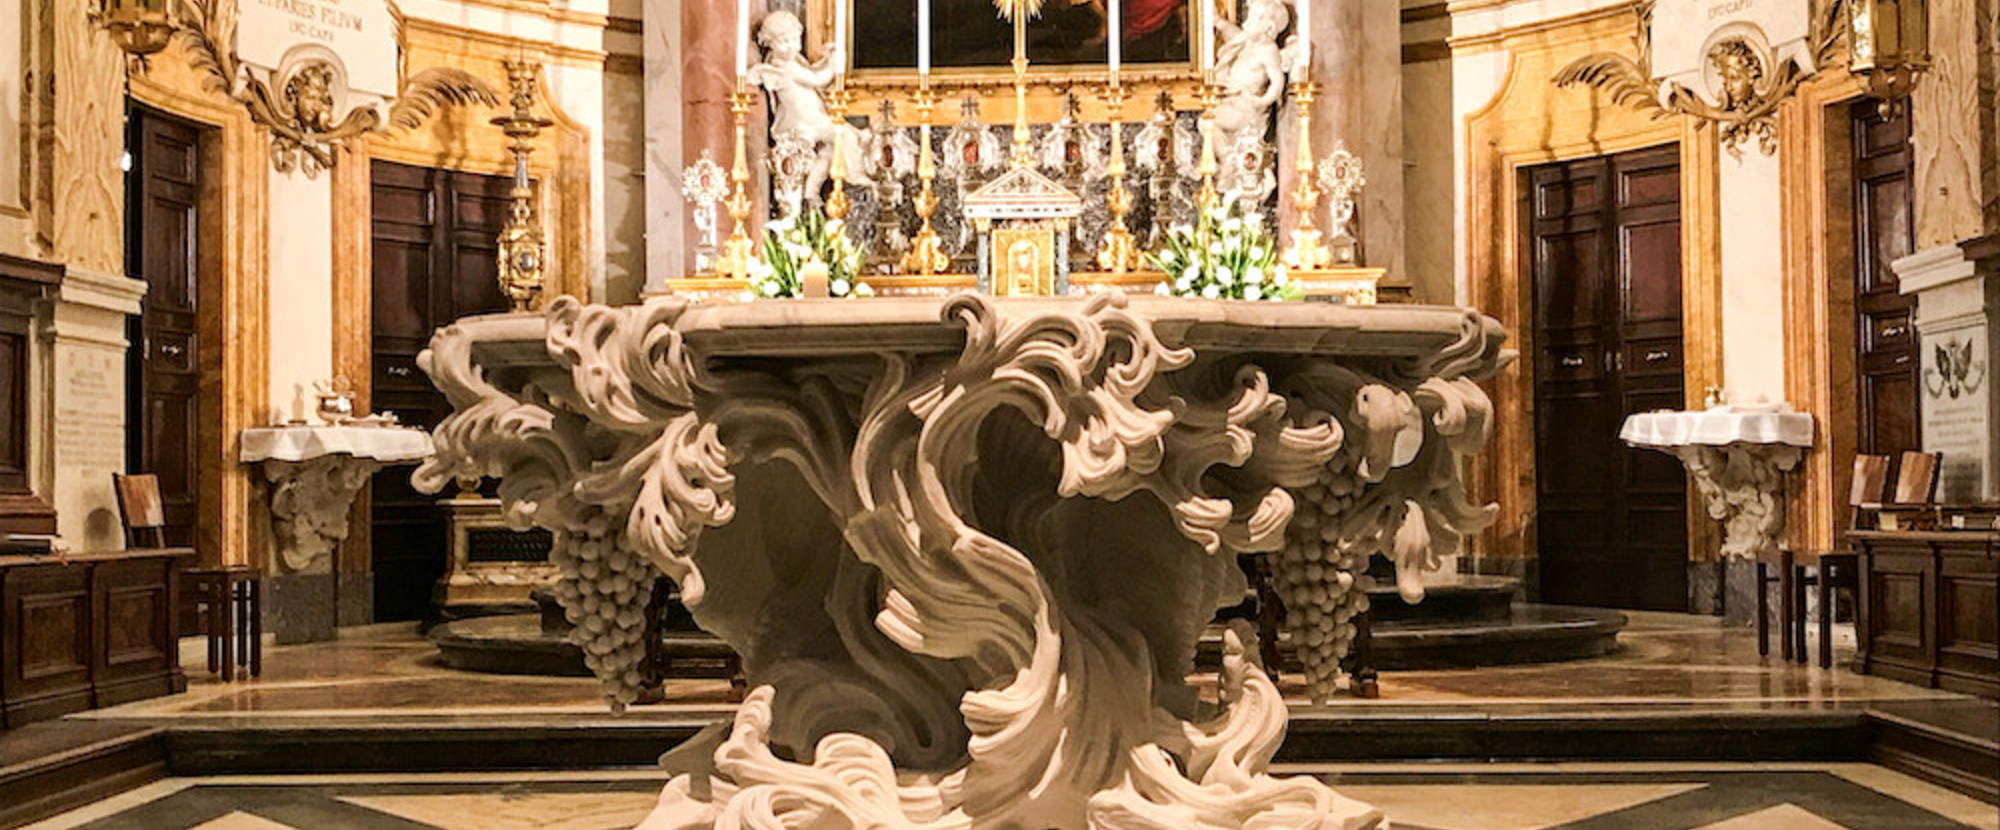 Der neue Altar in der Santa Maria dell'Anima Kirche in Rom am 19. März 2021.